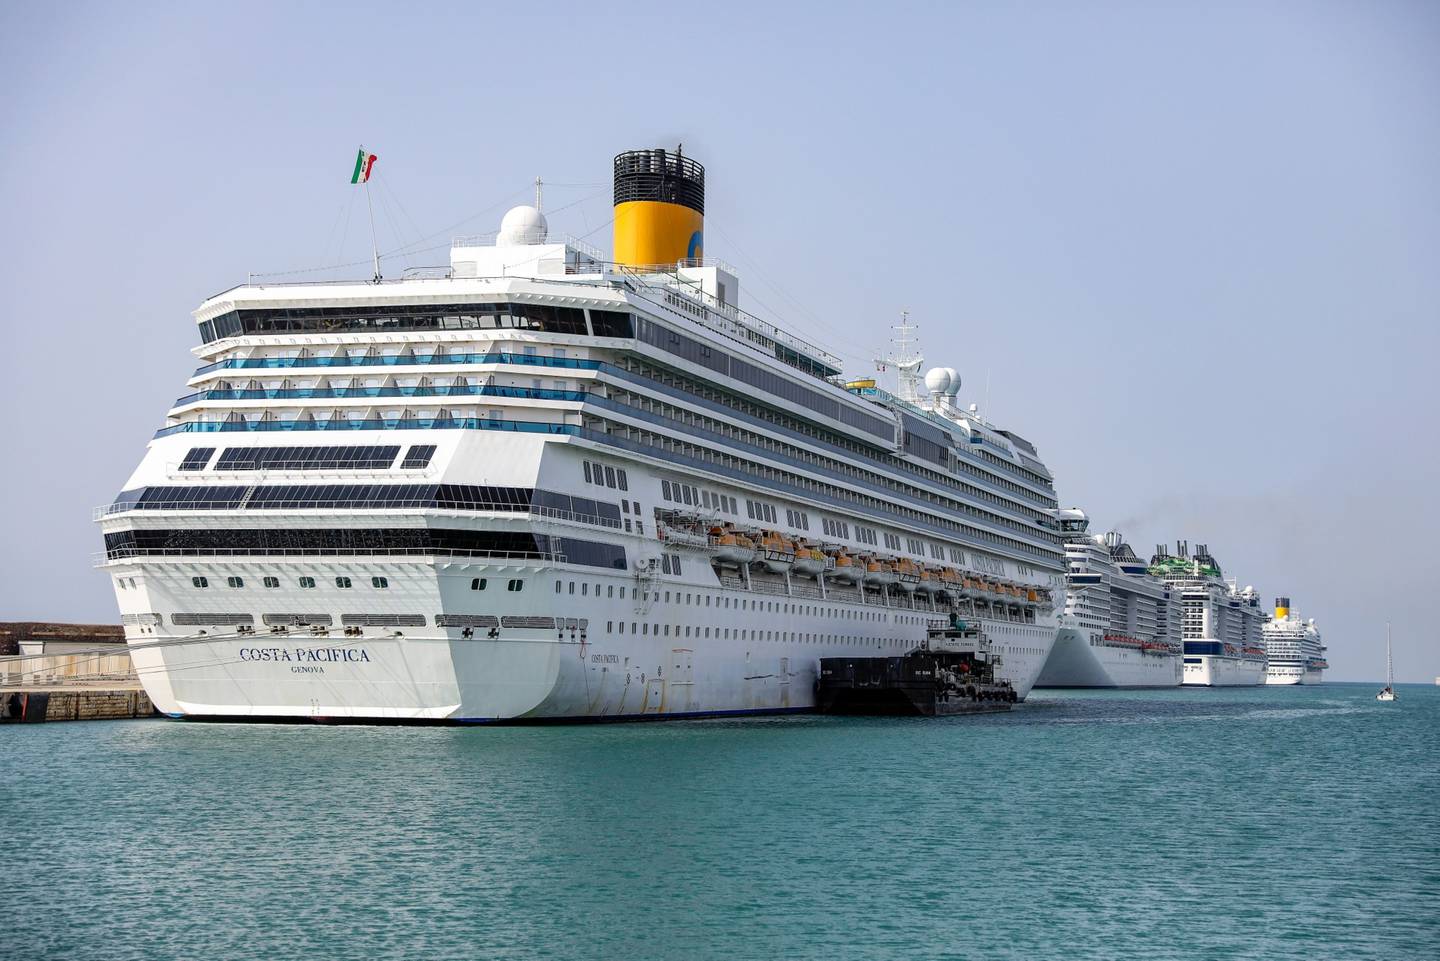 El barco, operado por Carnival Corp., toca puerto en Civitavecchia, cerca de Roma, Italia.